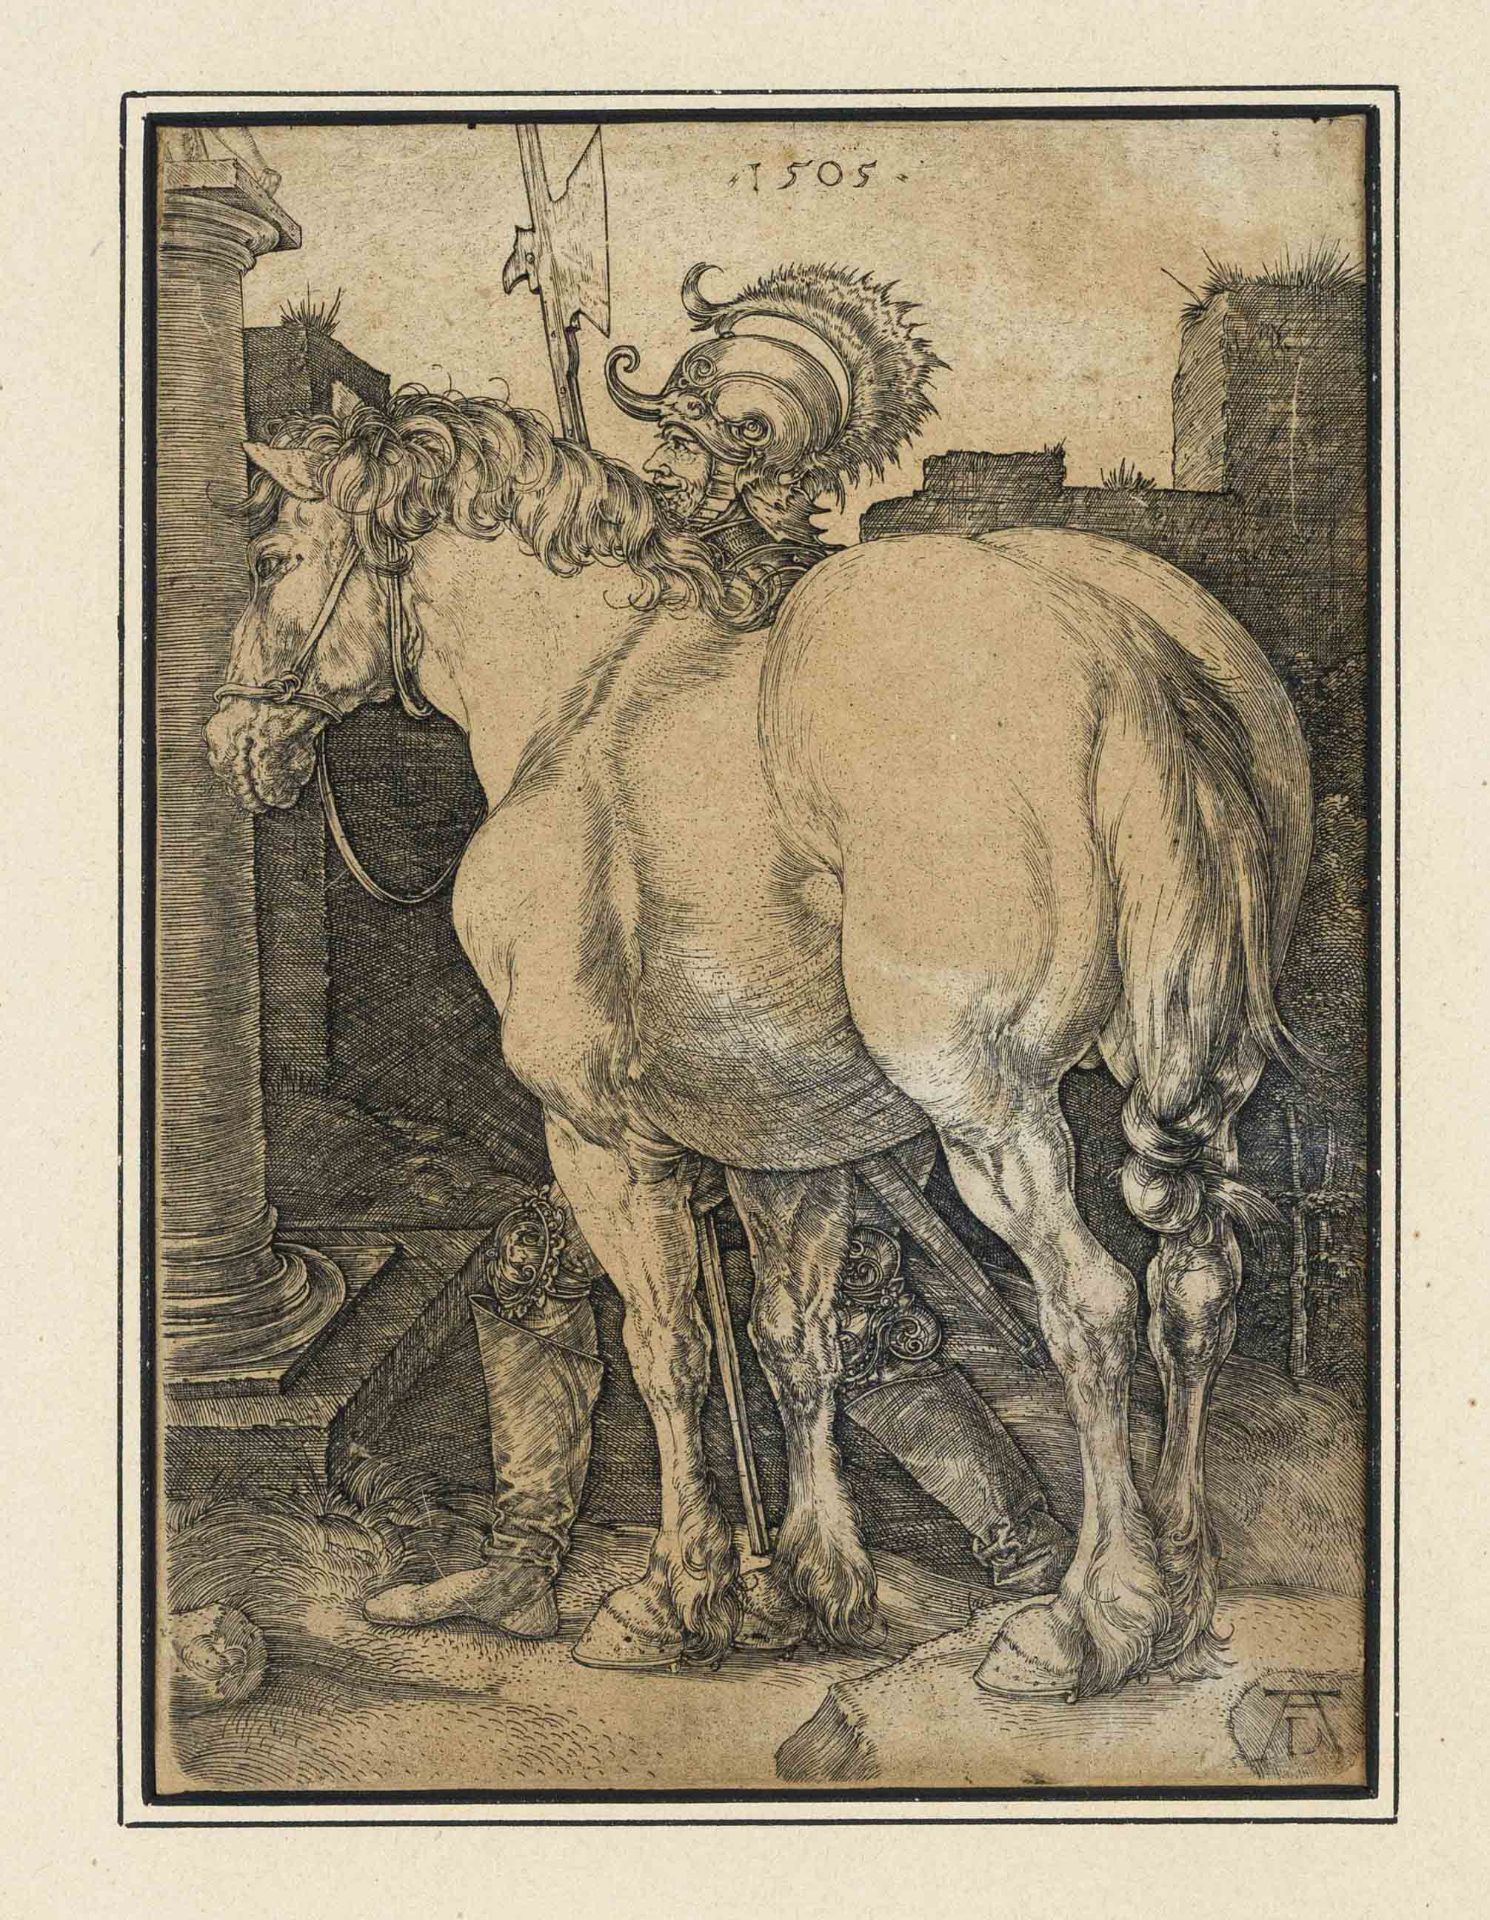 Albrecht Dürer (1471-1528), Das